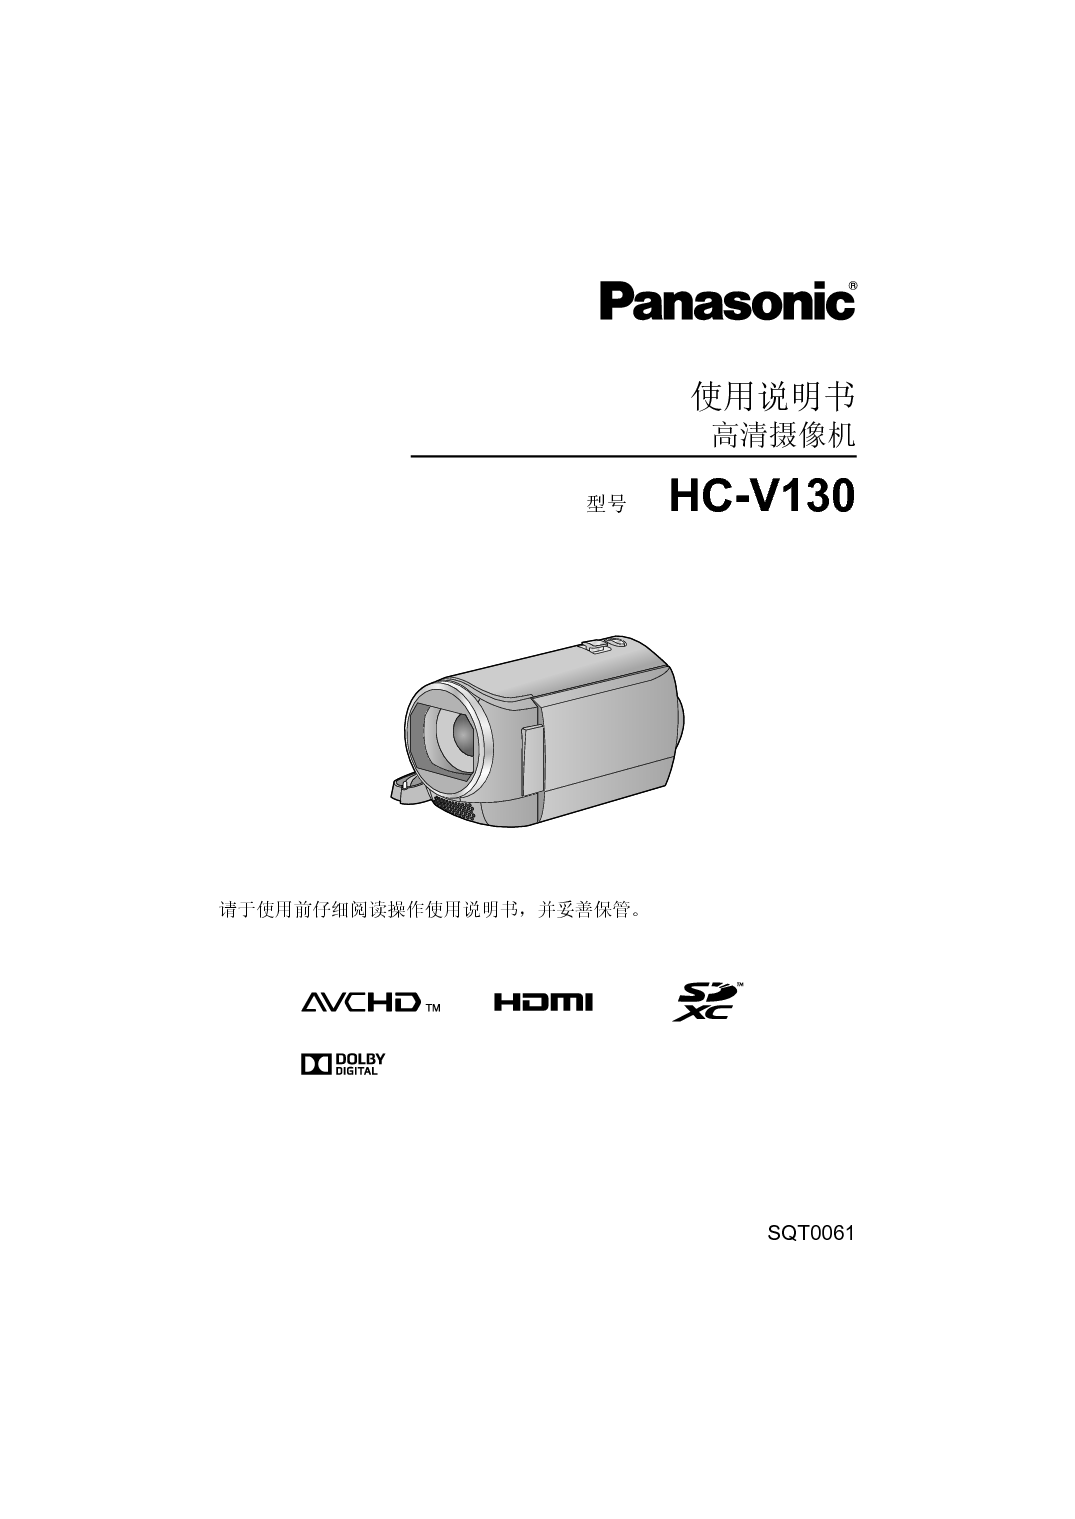 松下 Panasonic HC-V130GK 使用说明书 封面